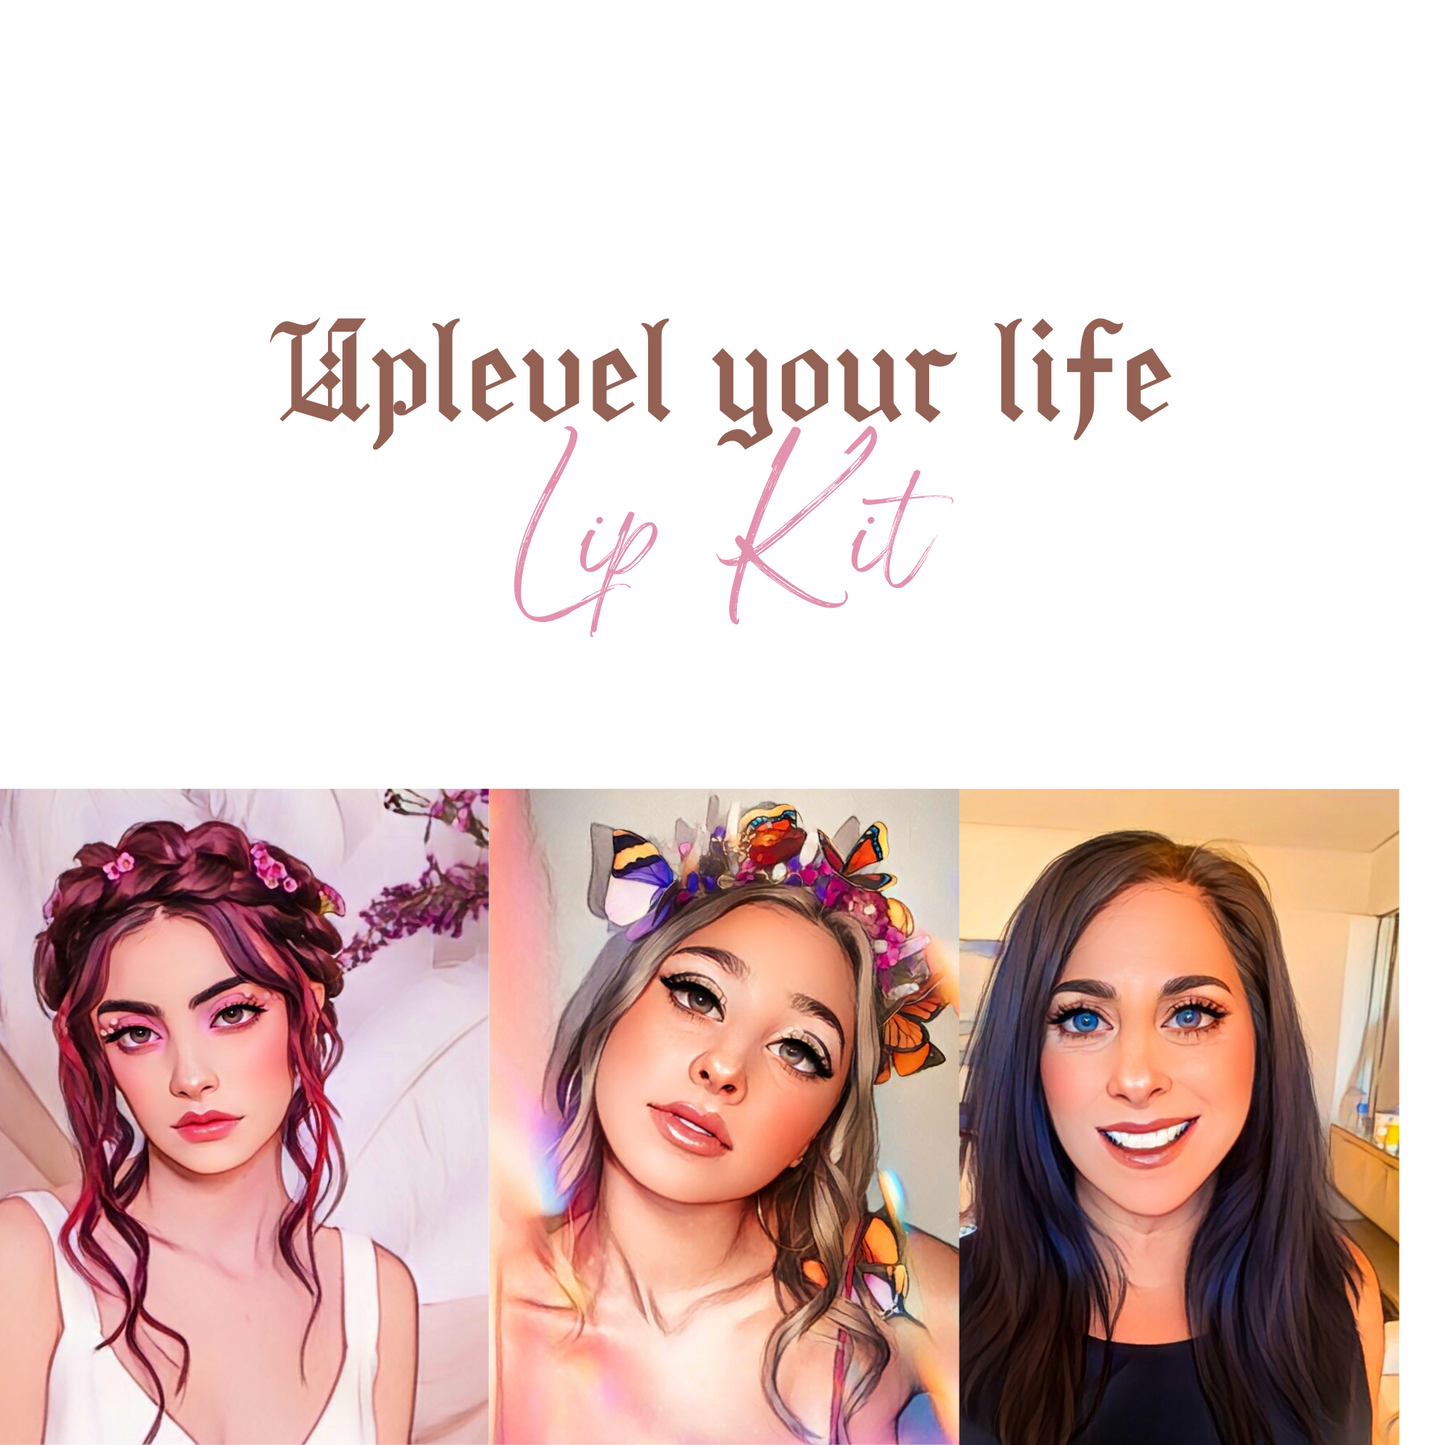 Uplevel your life - Lip Kit